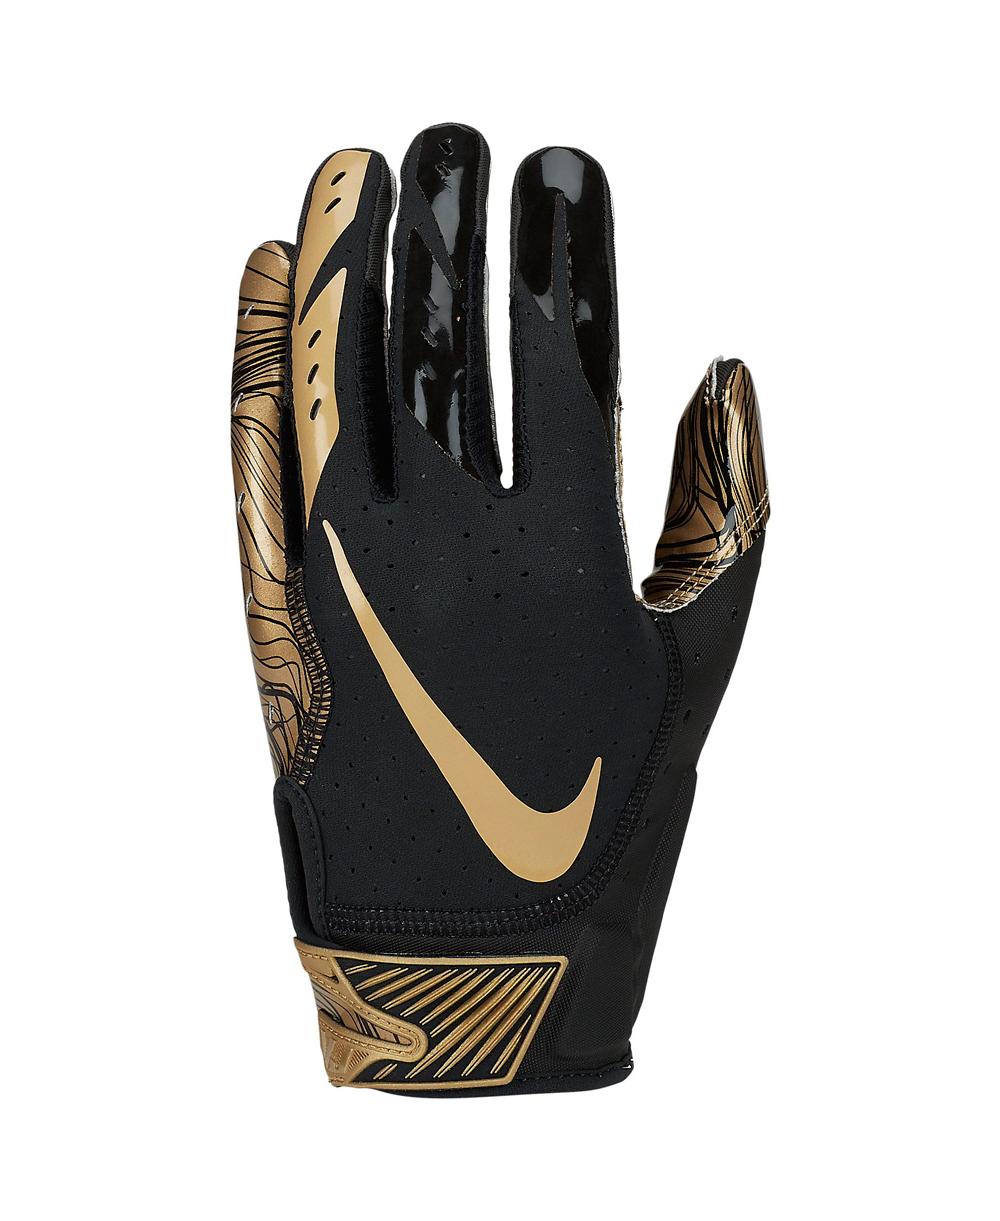 nike vapor jet 5.0 football gloves